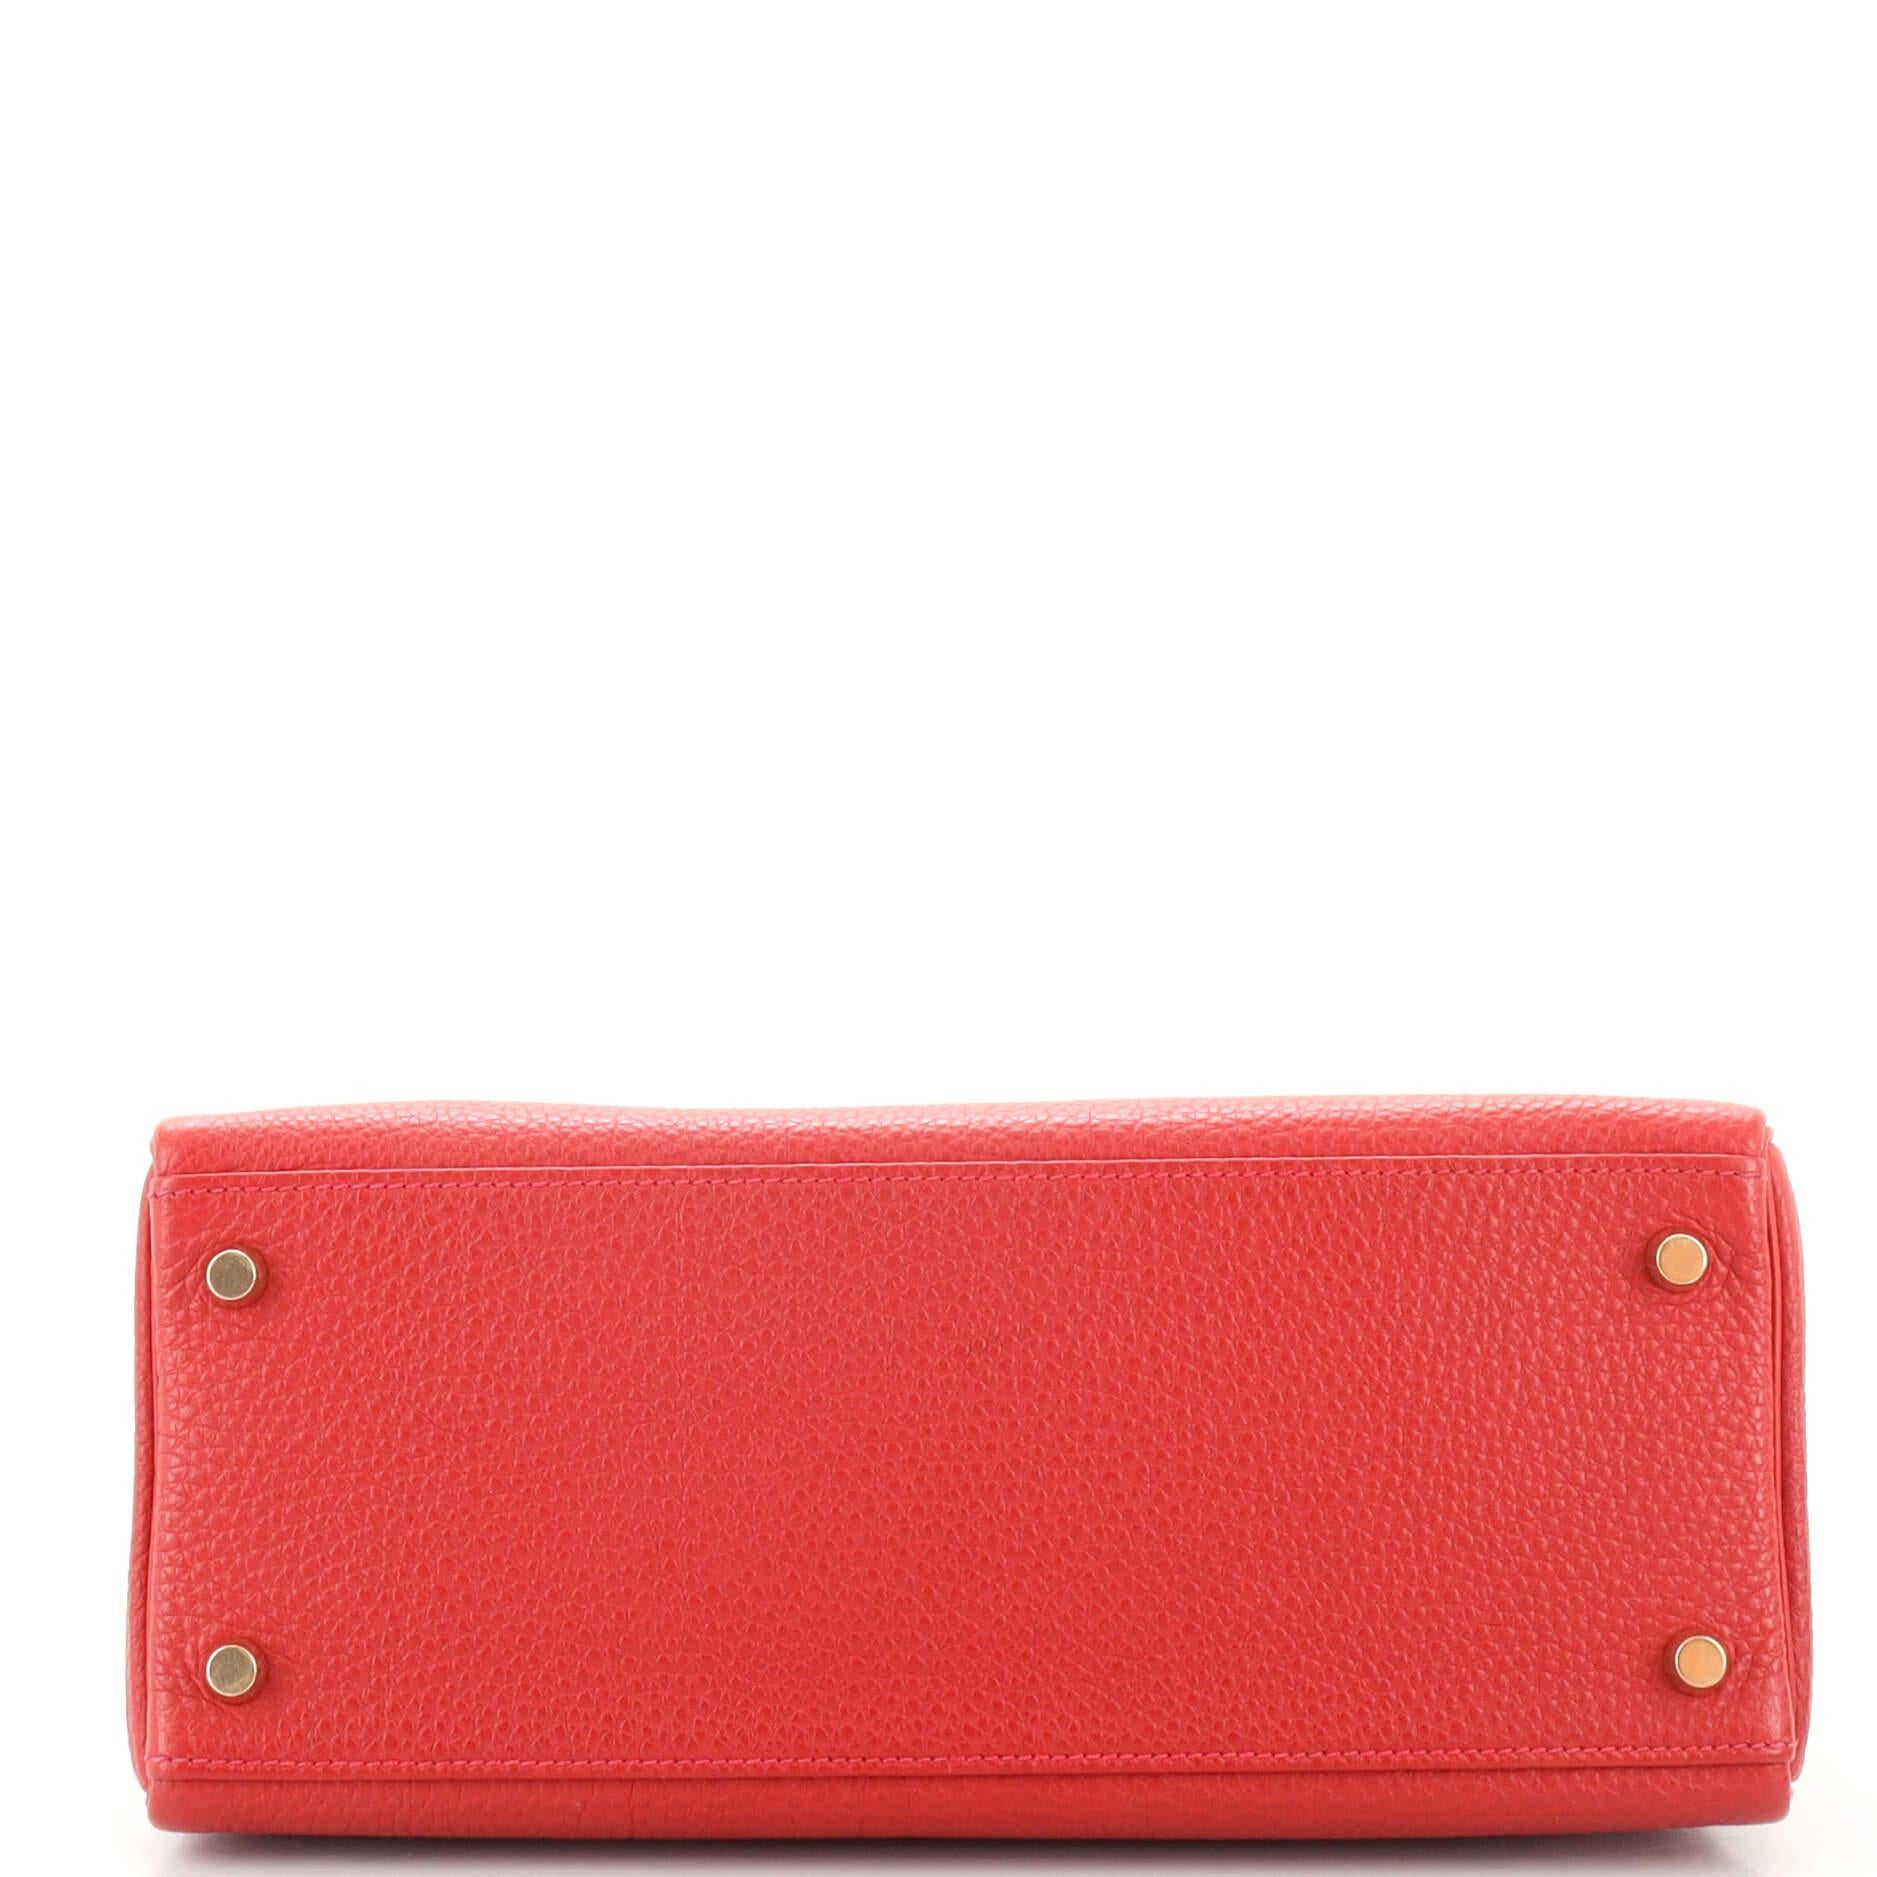 Hermes Kelly Handbag Rouge Vif Togo with Gold Hardware 28 1